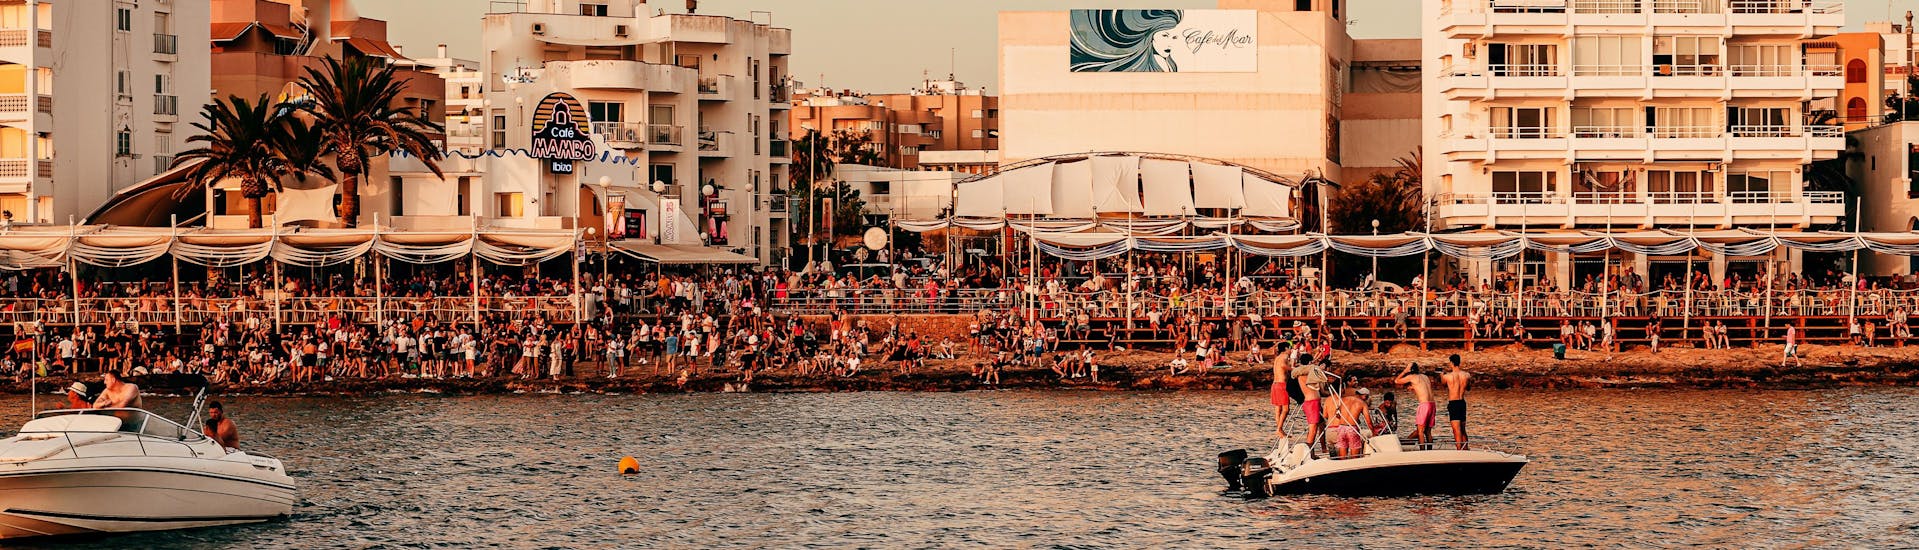 Paar boten met mensen die zich vermaken tijdens een boottocht naar Cafe Mambo en Cafe del Mar.